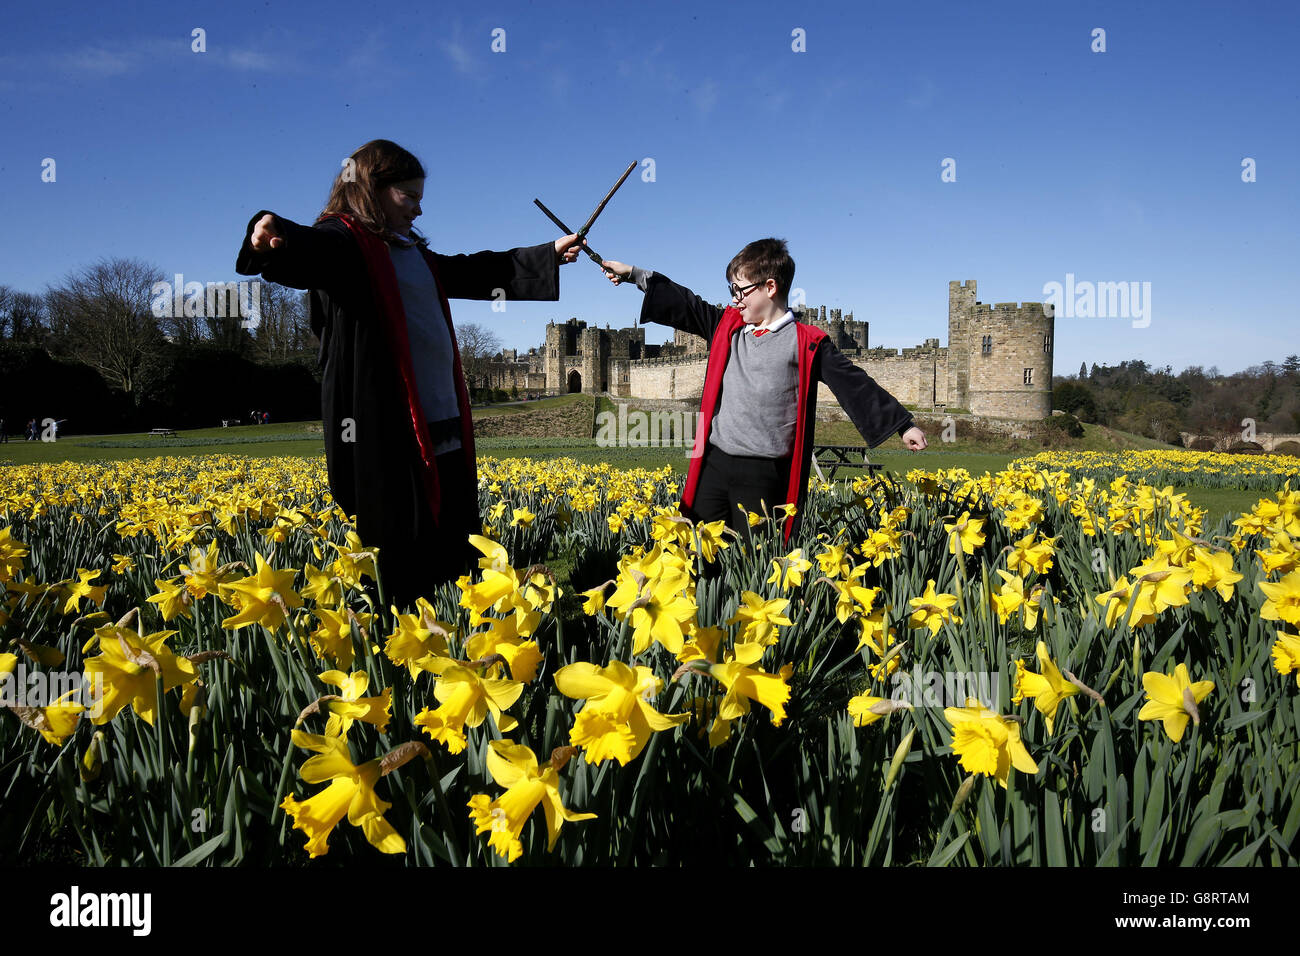 Thomas et Bethany Gilbert, de West Bromwich, pratiquent Harry Potter avant d'aller à la formation de bâton de poulet au château d'Alnwick, dans le Northumberland. Banque D'Images